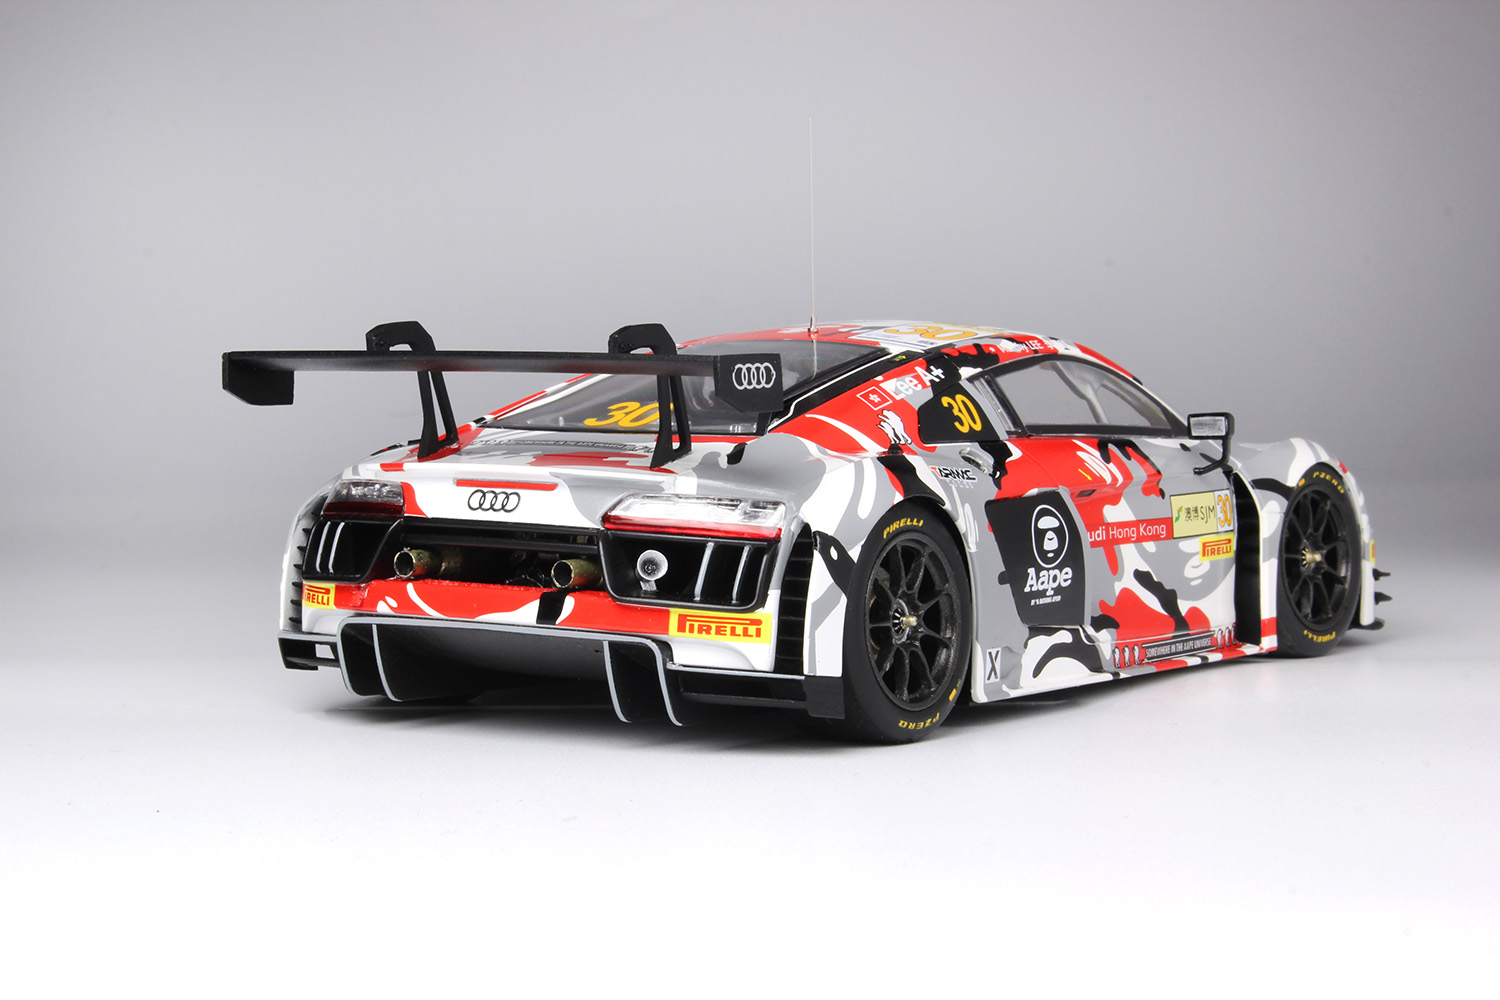 1/24レーシングシリーズ アウディ ホンコン R8 GT-3 2015 マカオ ワールドカップ